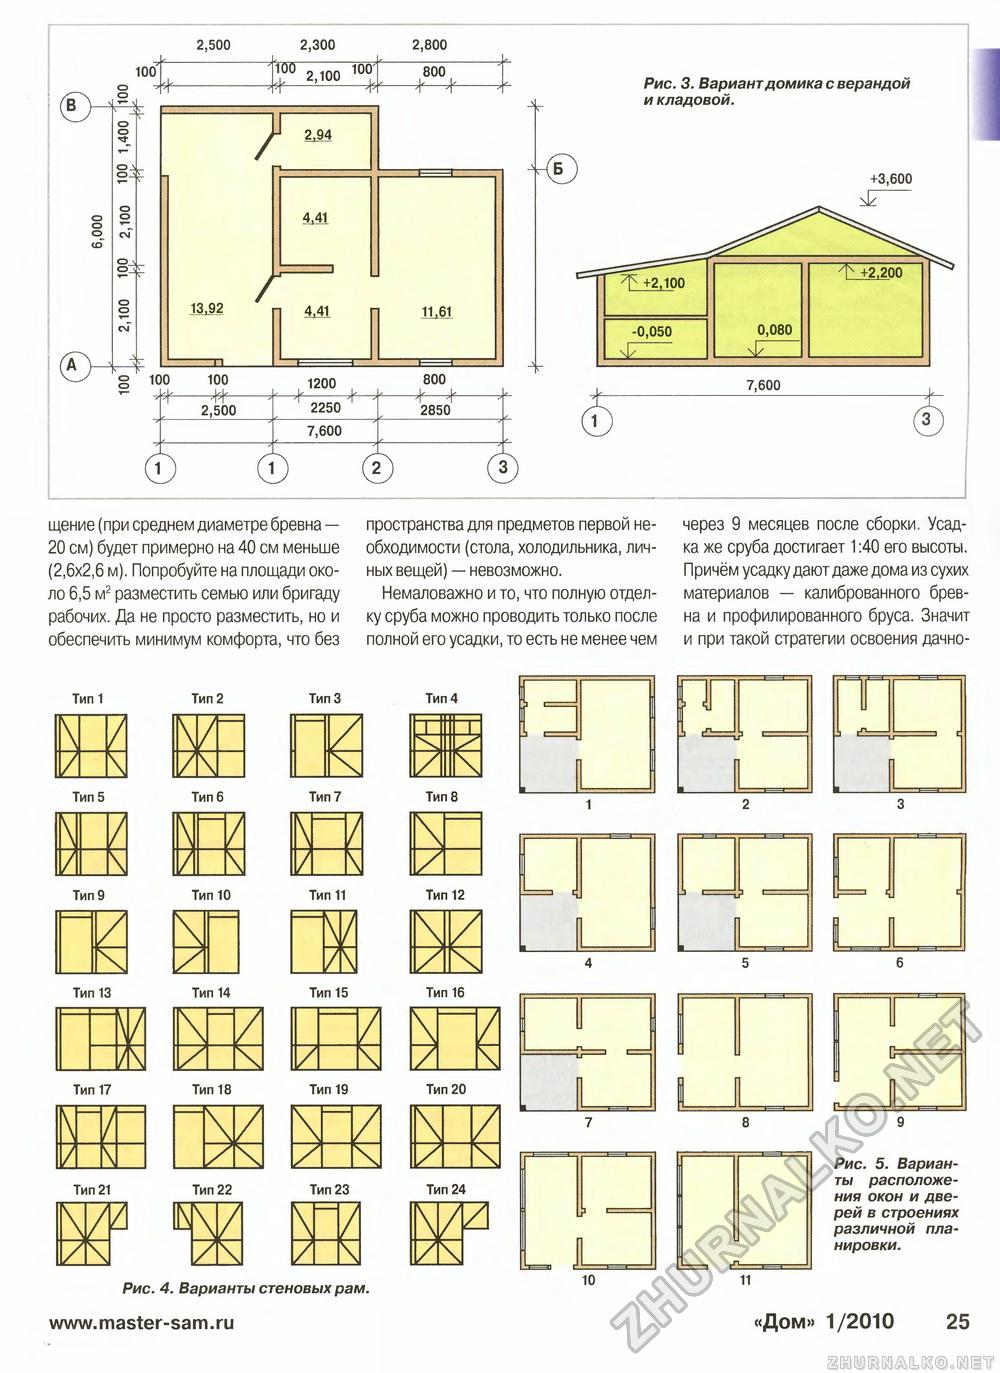 Дом 2010-01, страница 25